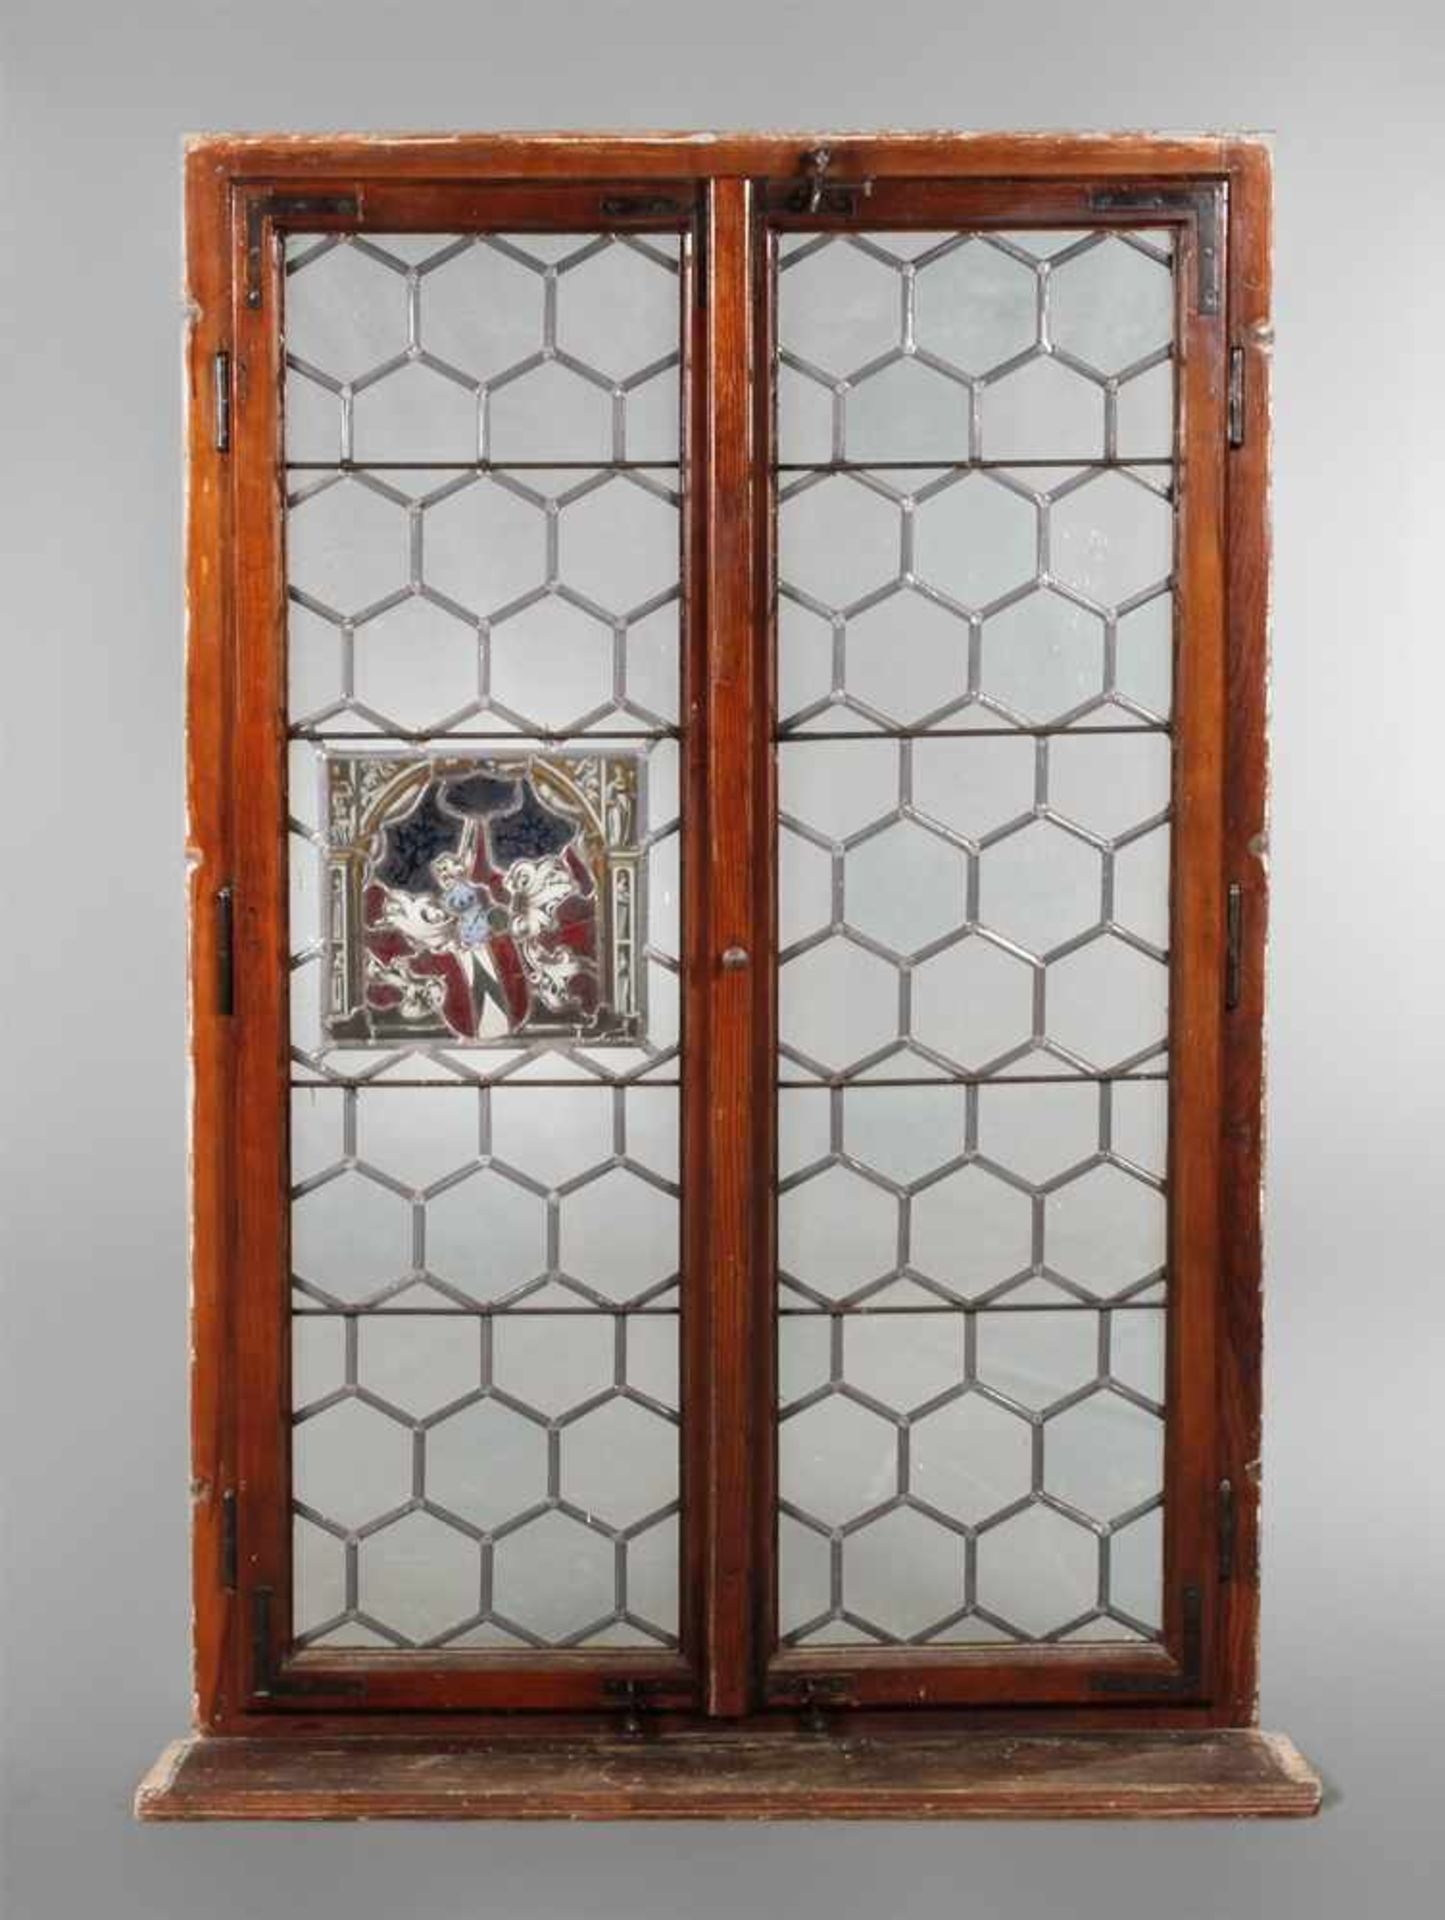 Großes Bleiglasfensterum 1900, Nadelholz massiv, farblos lackiert, zweiflügelig mit Rahmen und